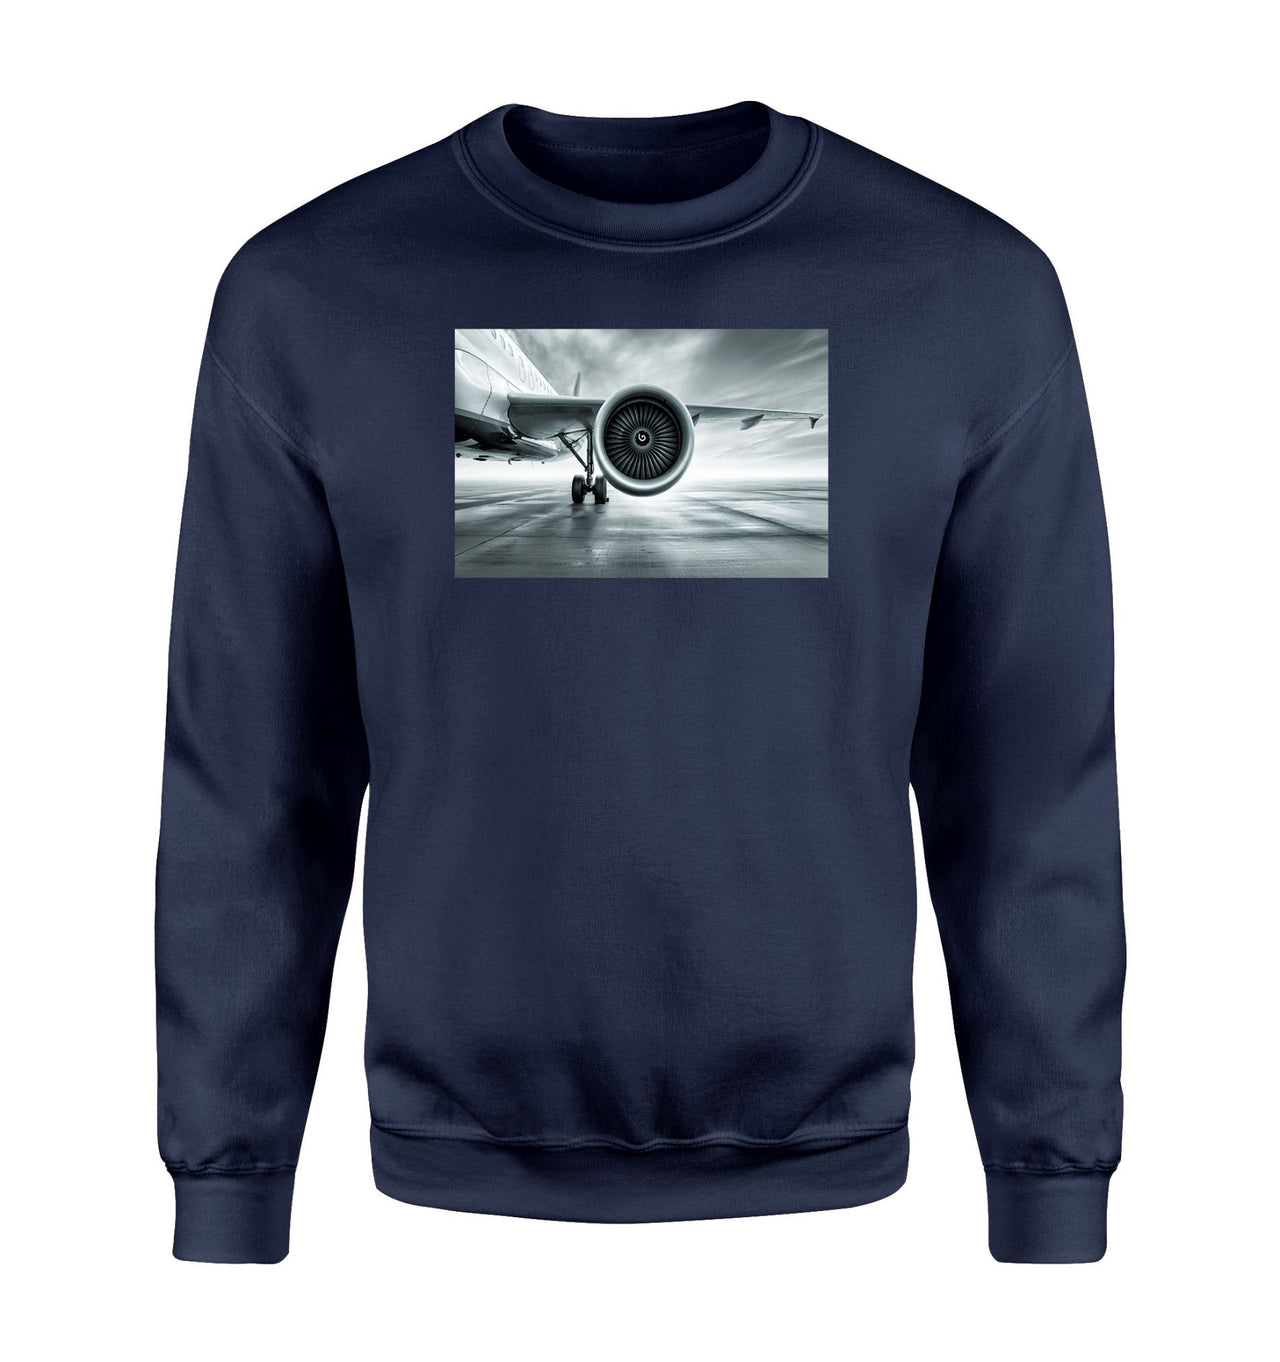 Super Cool Airliner Jet Engine Designed Sweatshirts